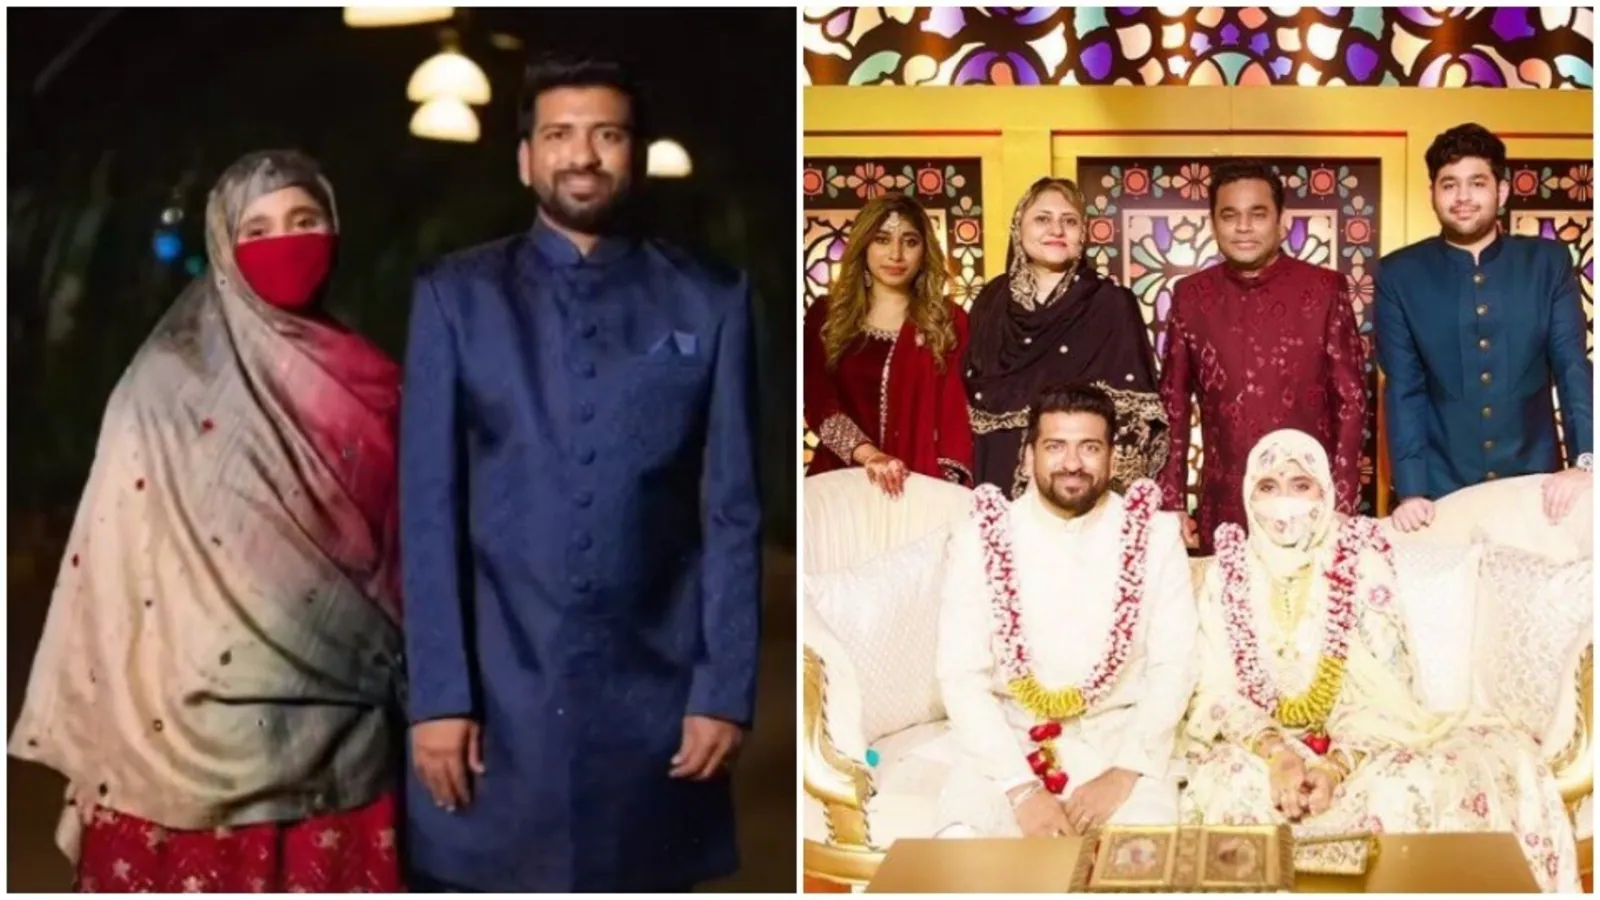 AR Rahman shares video from daughter Khatija Rahman’s wedding reception; fans praise newlyweds’ ‘simplicity’. Watch